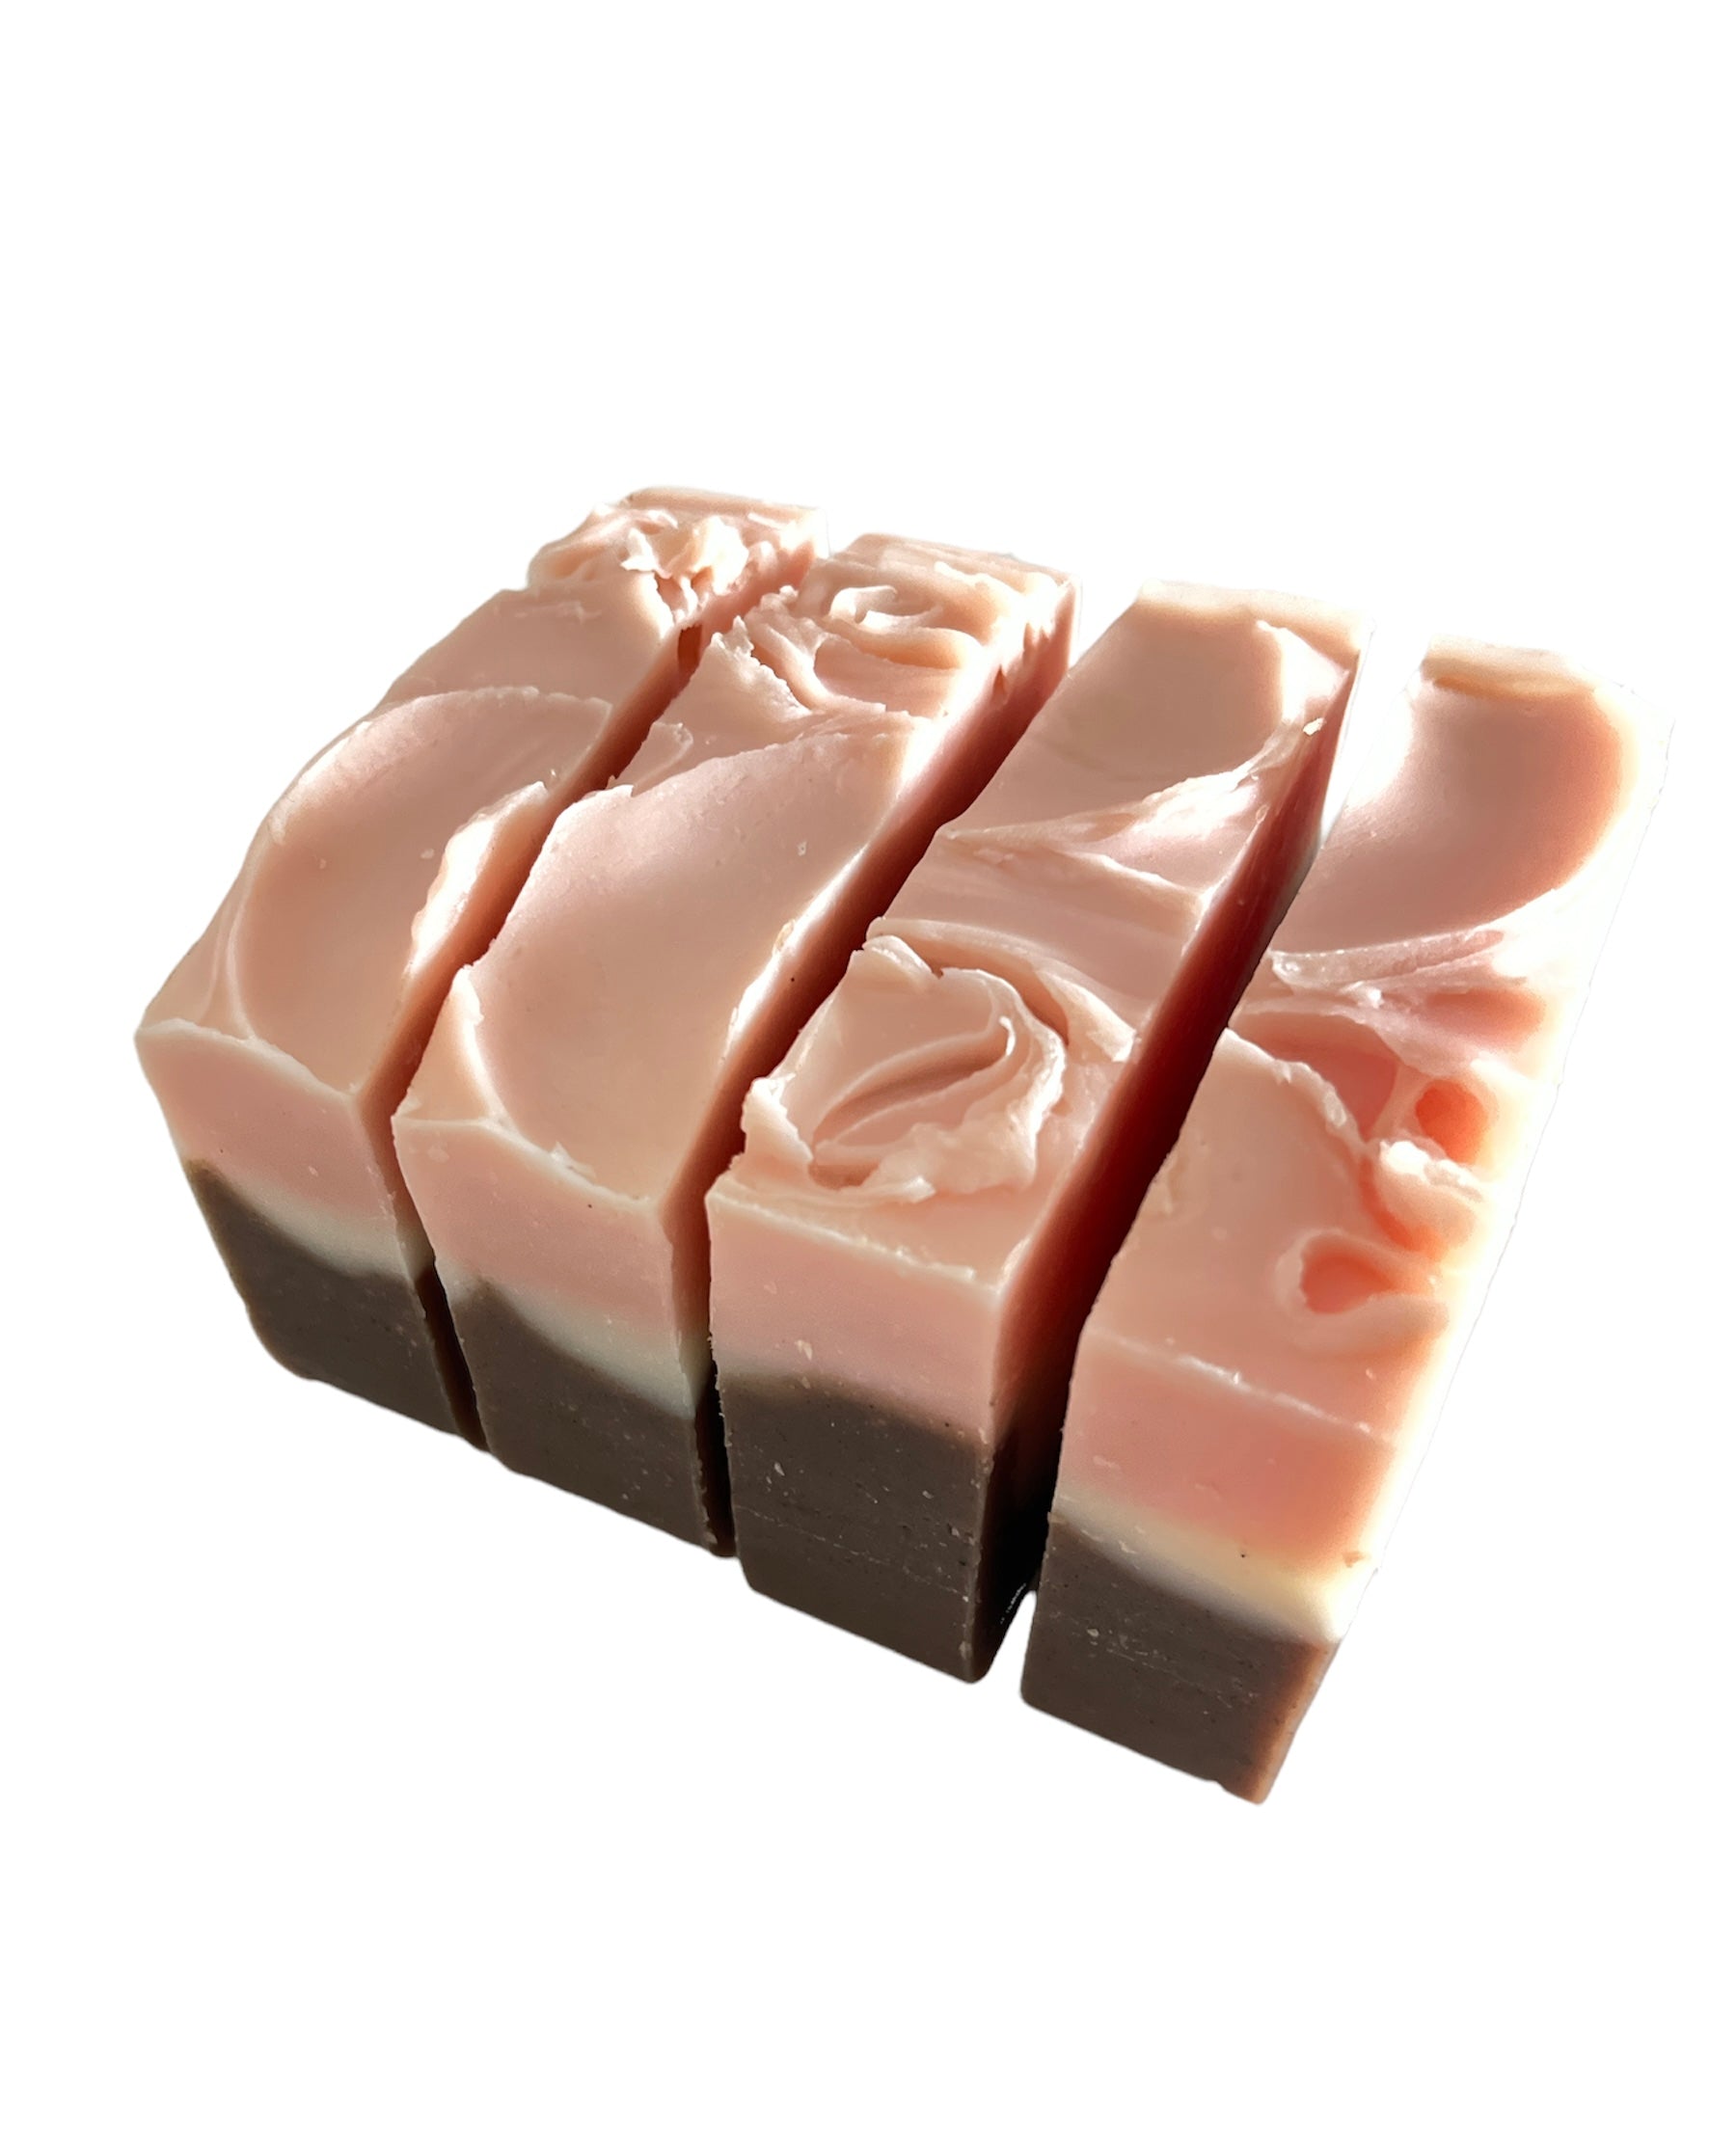 Persephone Kiss Soap | Vegan Soap